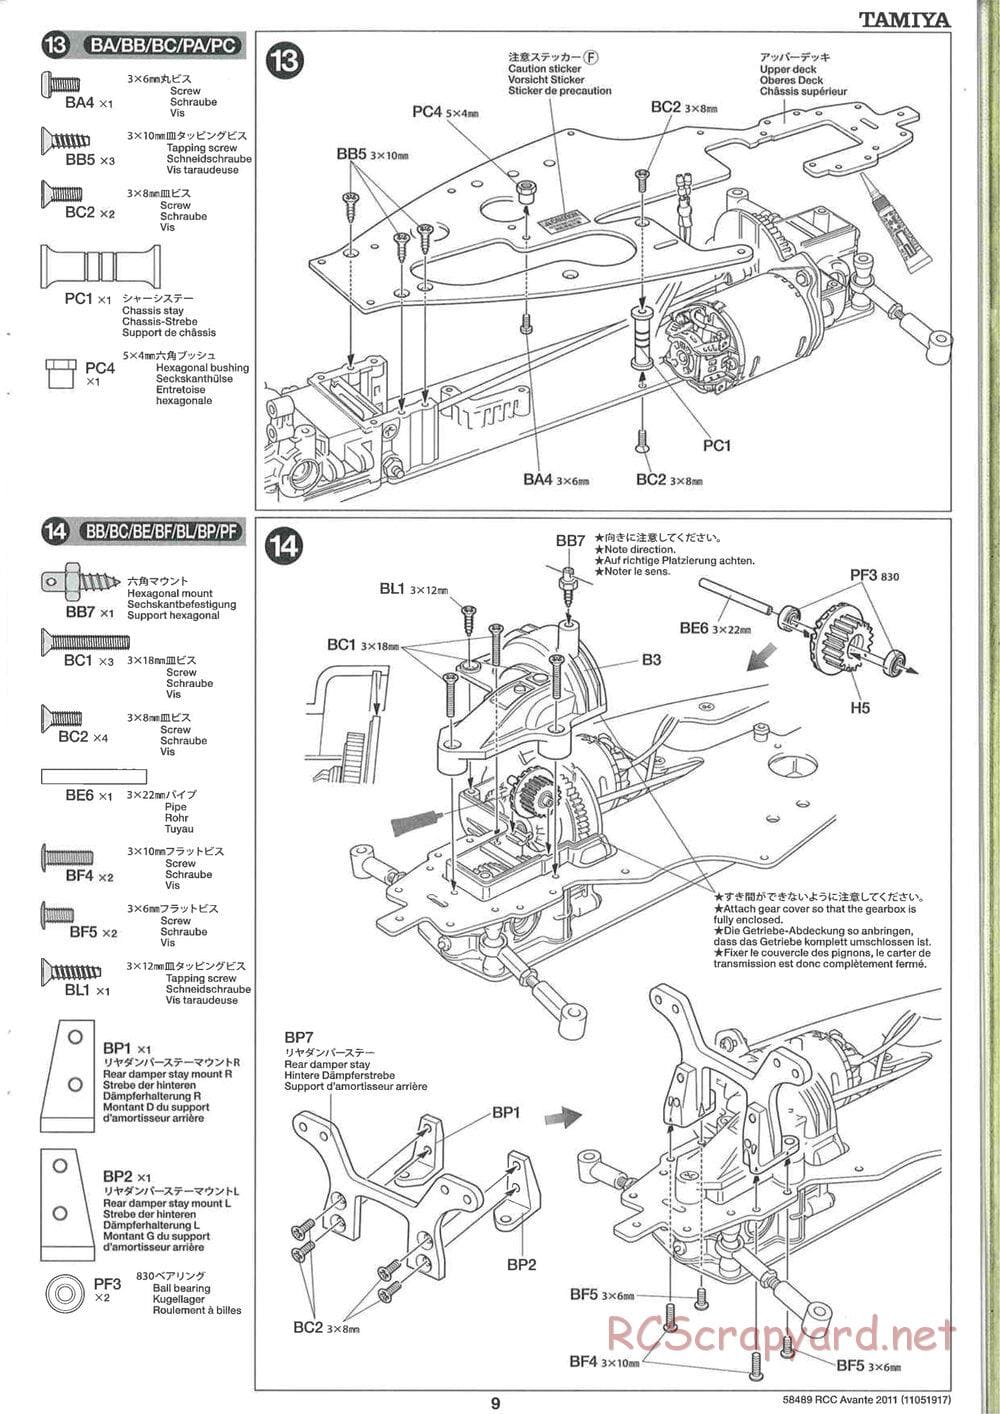 Tamiya - Avante 2011 - AV Chassis - Manual - Page 9